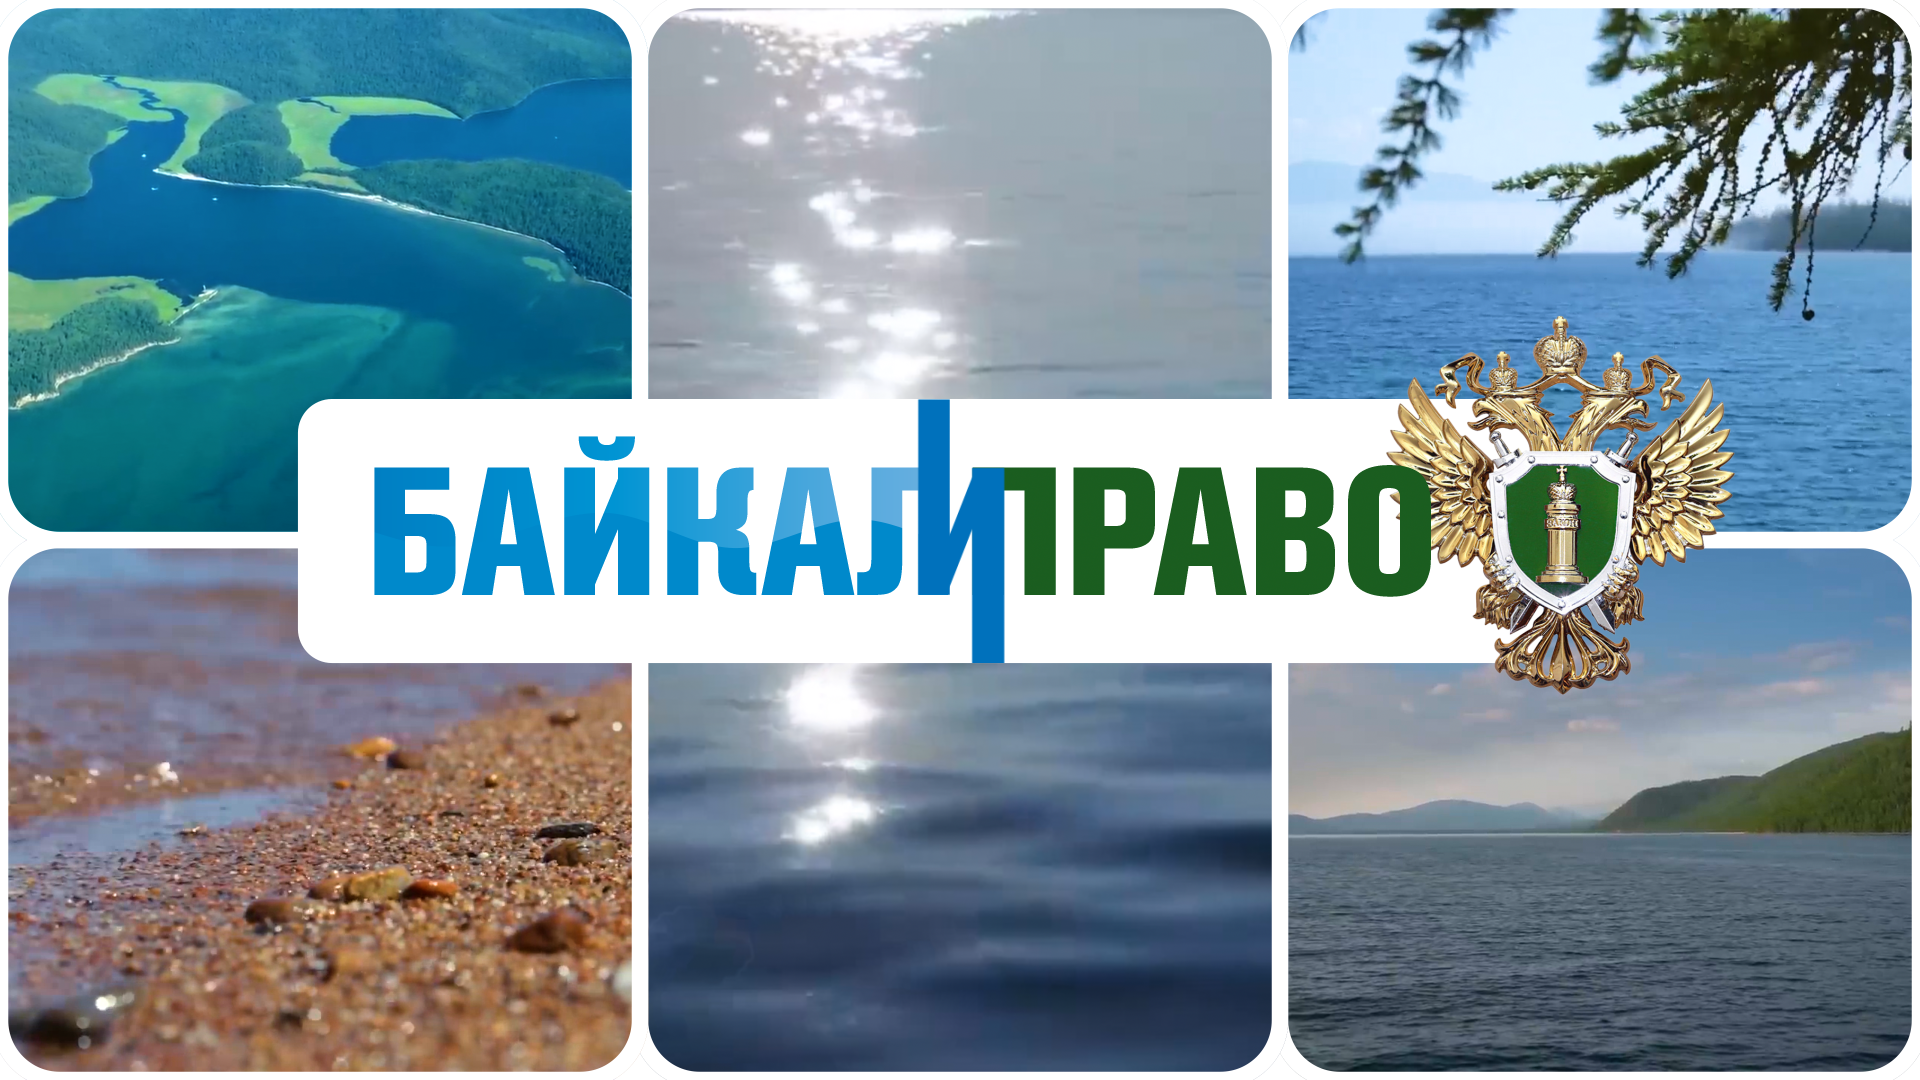 Байкал и Право. Охрана лесных ресурсов Иркутской области